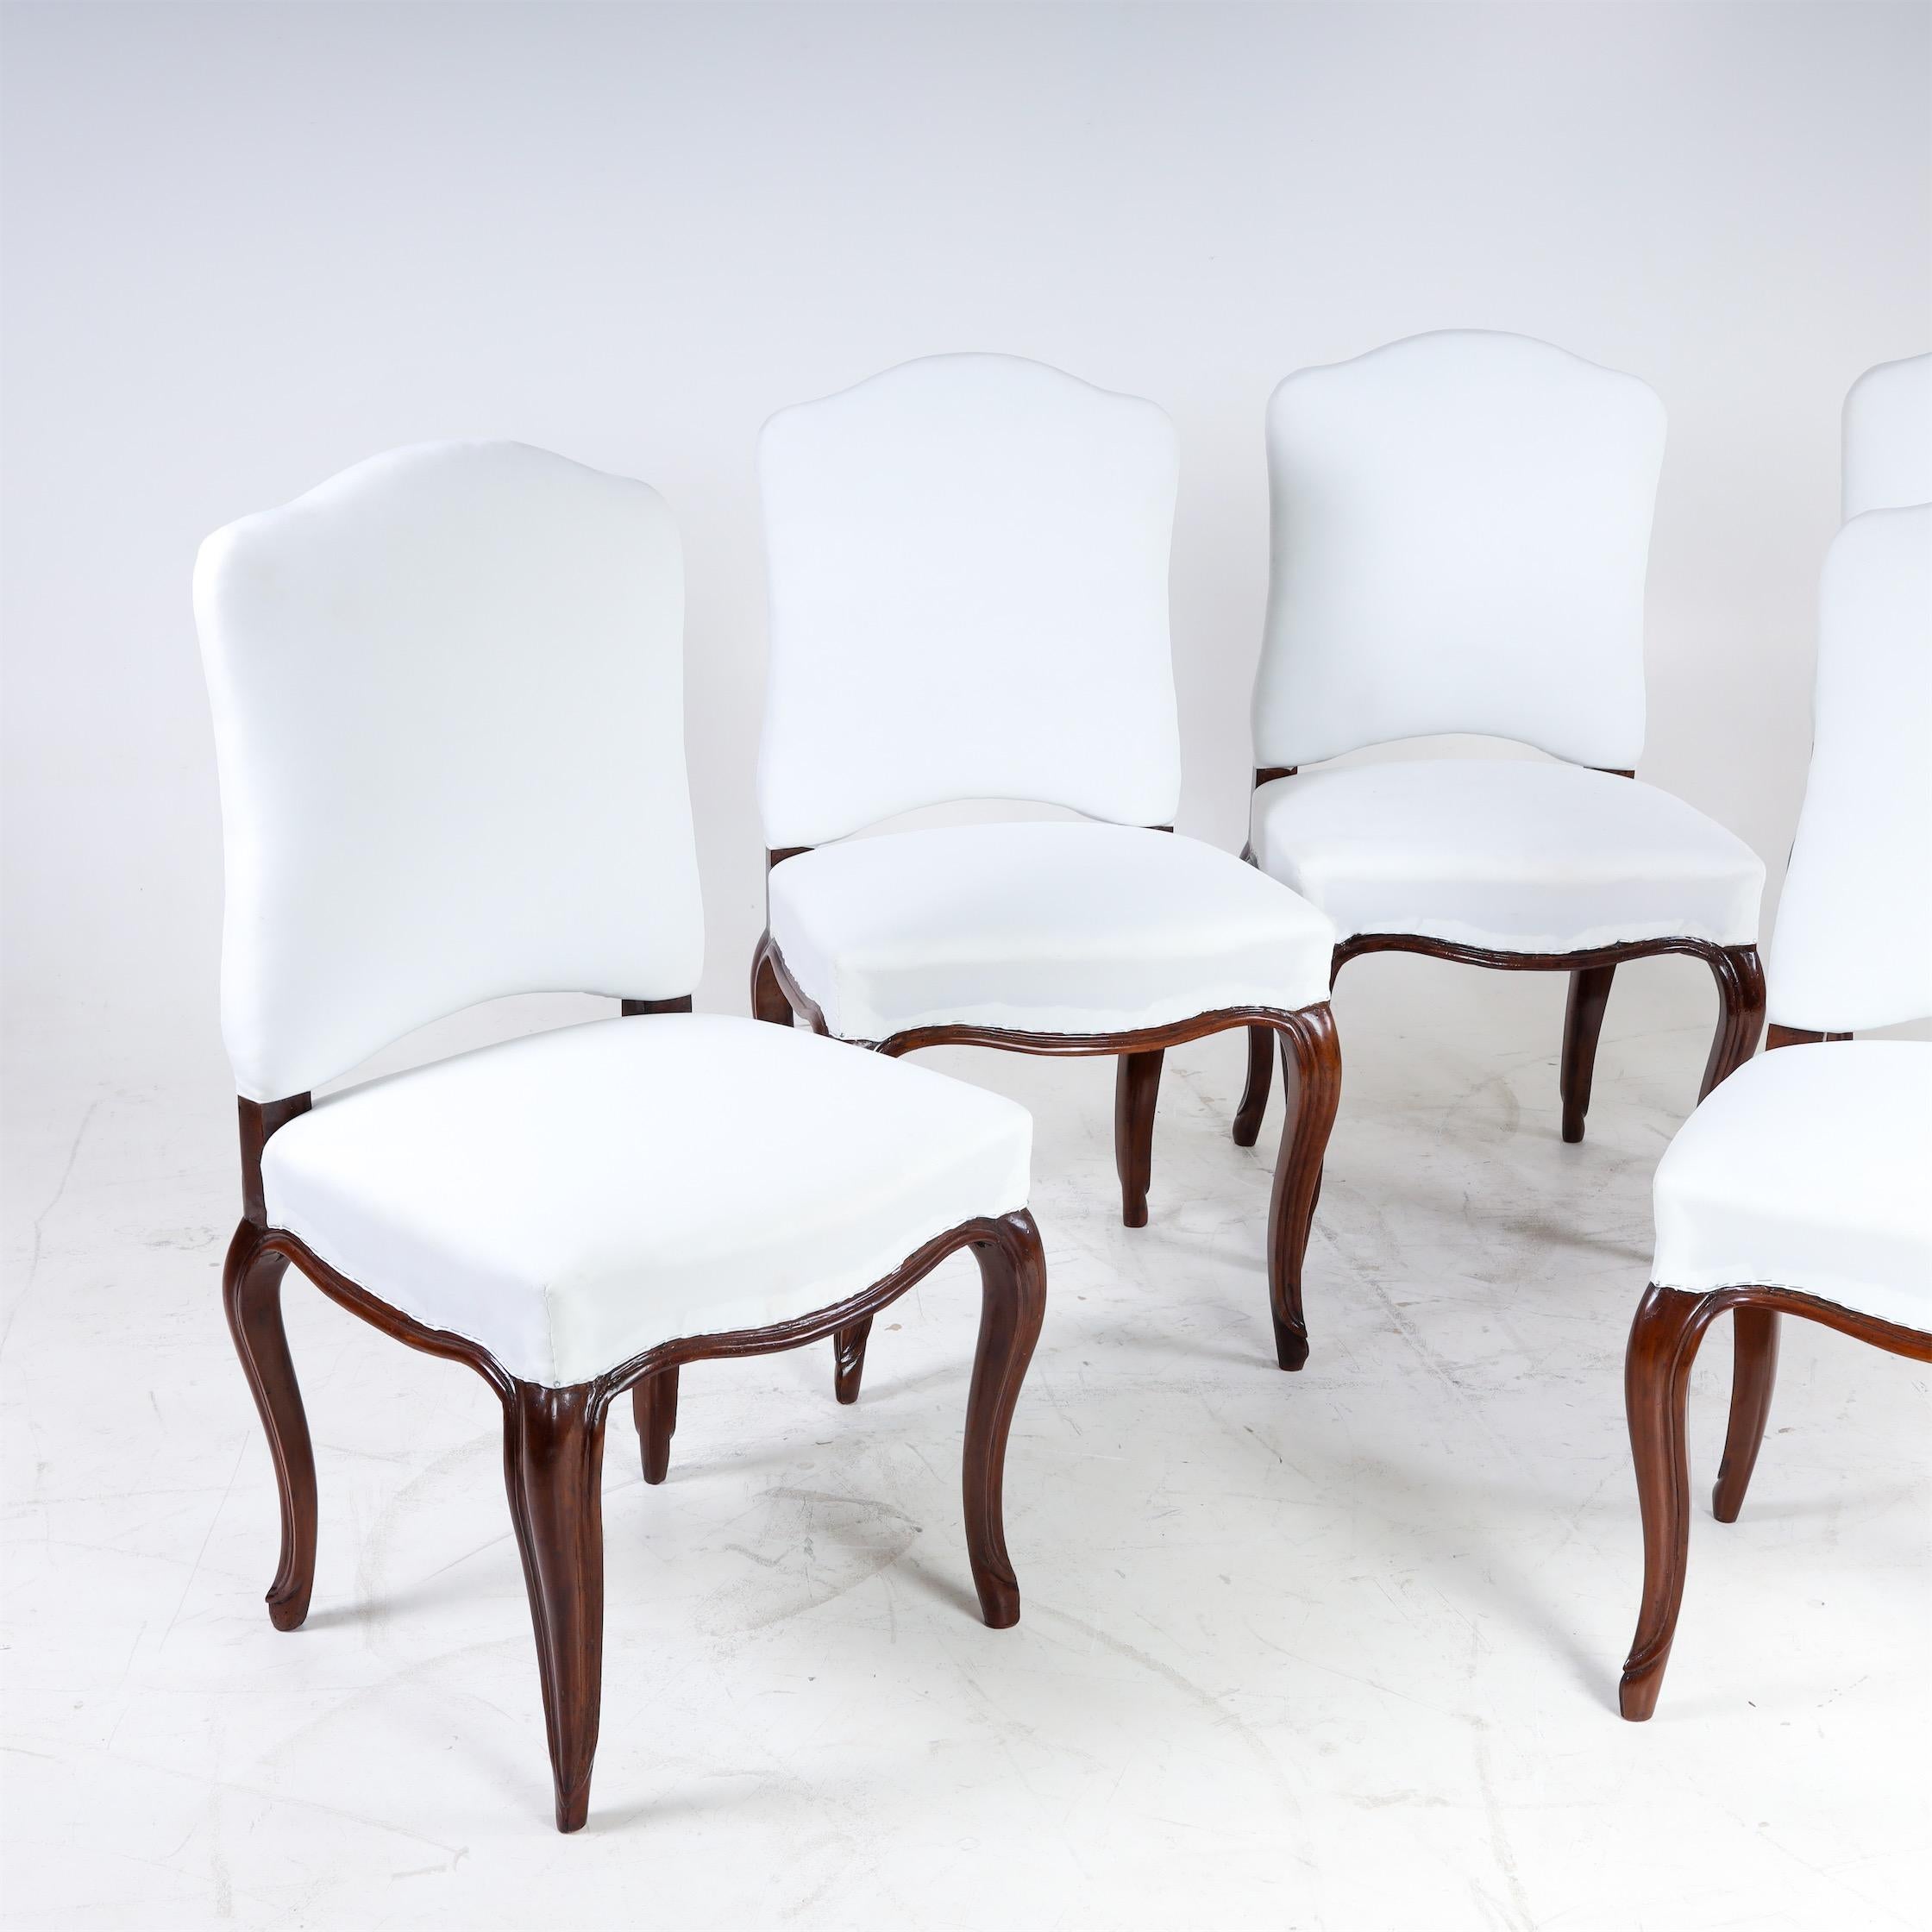 Ensemble de cinq chaises baroques sur pieds en S incurvés avec assise et dossier tapissés. Les chaises ont fait l'objet d'une finition experte et ont été recouvertes d'un tissu de base blanc.